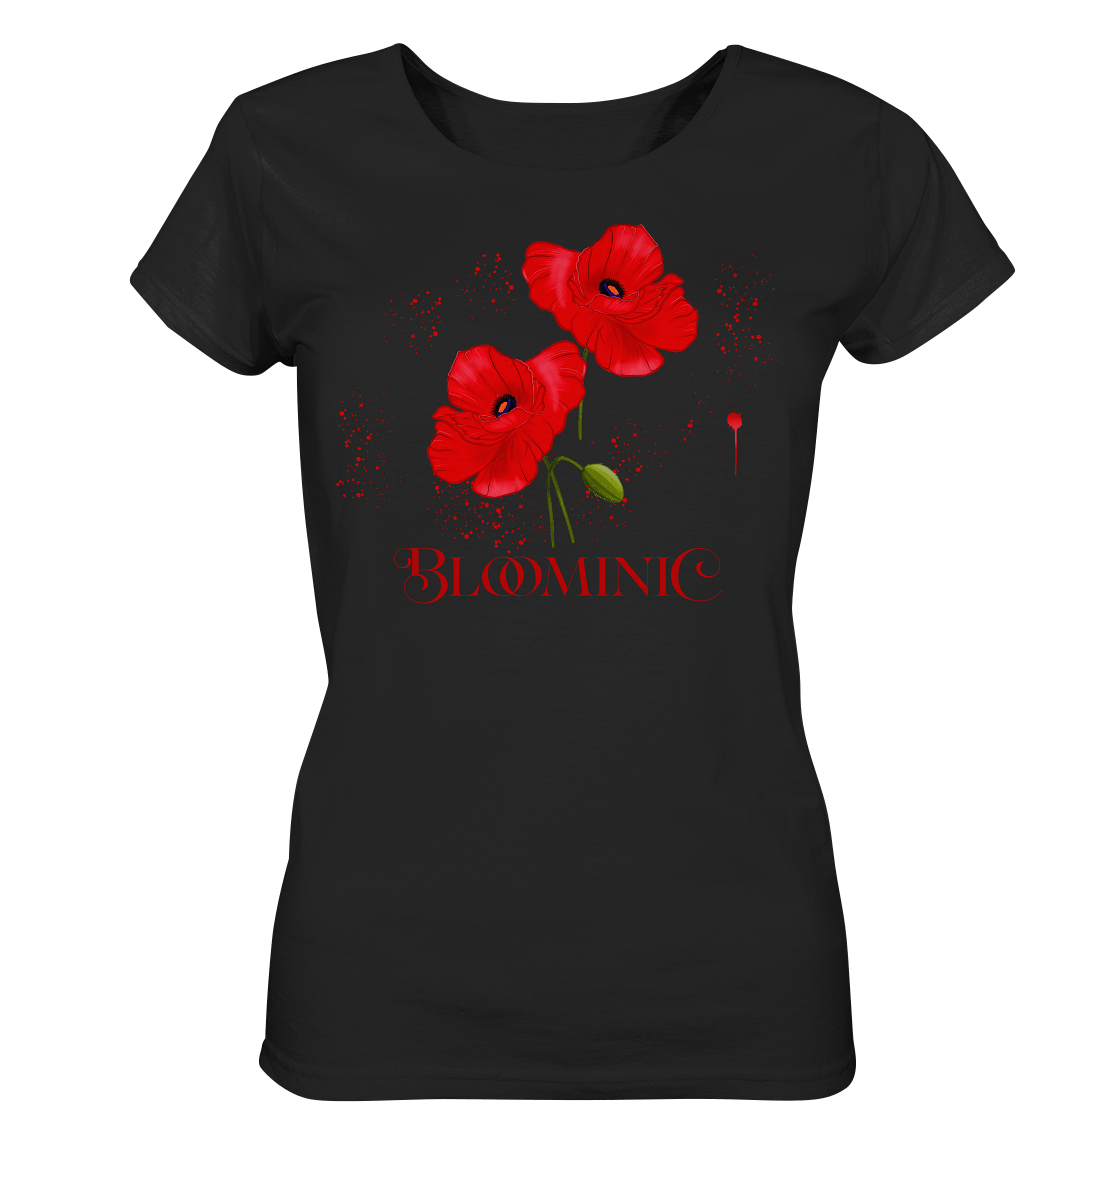 Damen T-Shirt in schwarz mit roten, handgezeichneten Mohnblumen. Florale Muster Mohnblumen Zeichnung Shirt Bloominic 